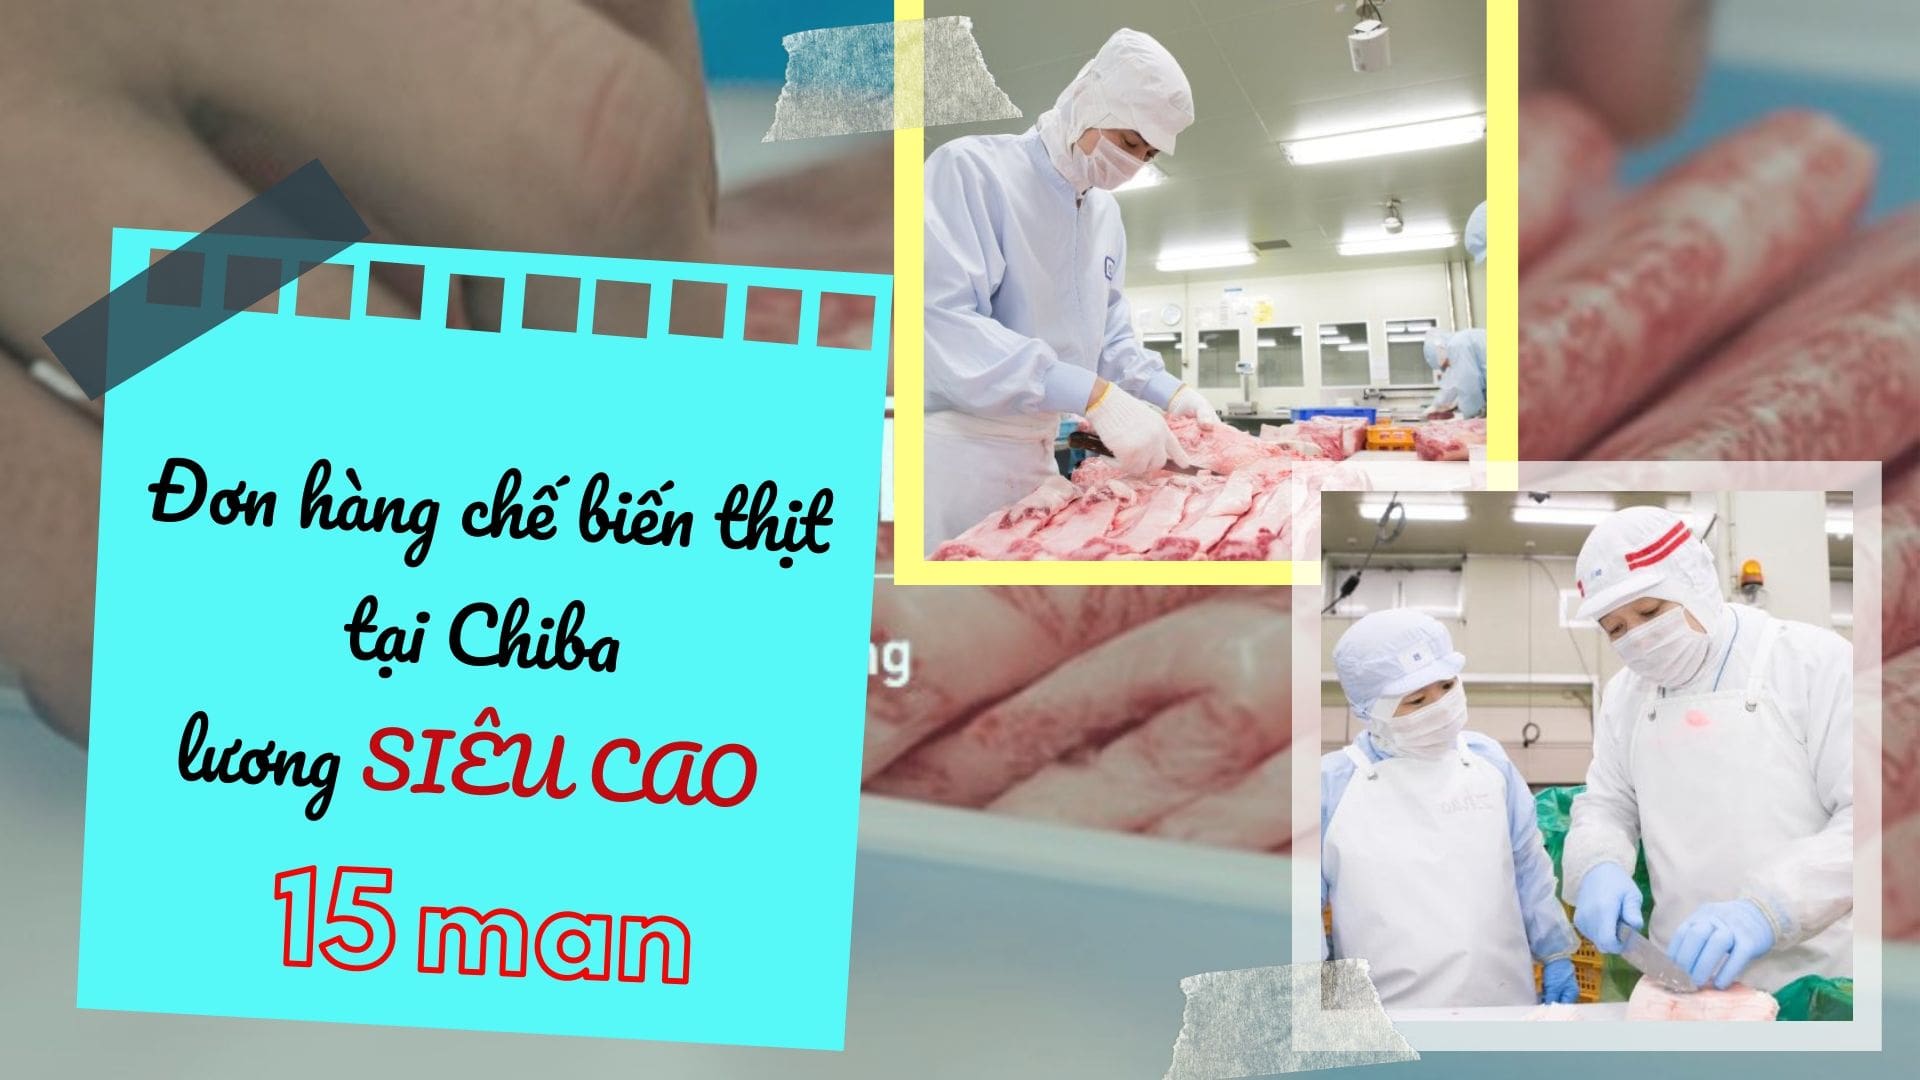 Đơn hàng chế biến thịt tại Chiba lương 15 man đang tuyển gấp lao động